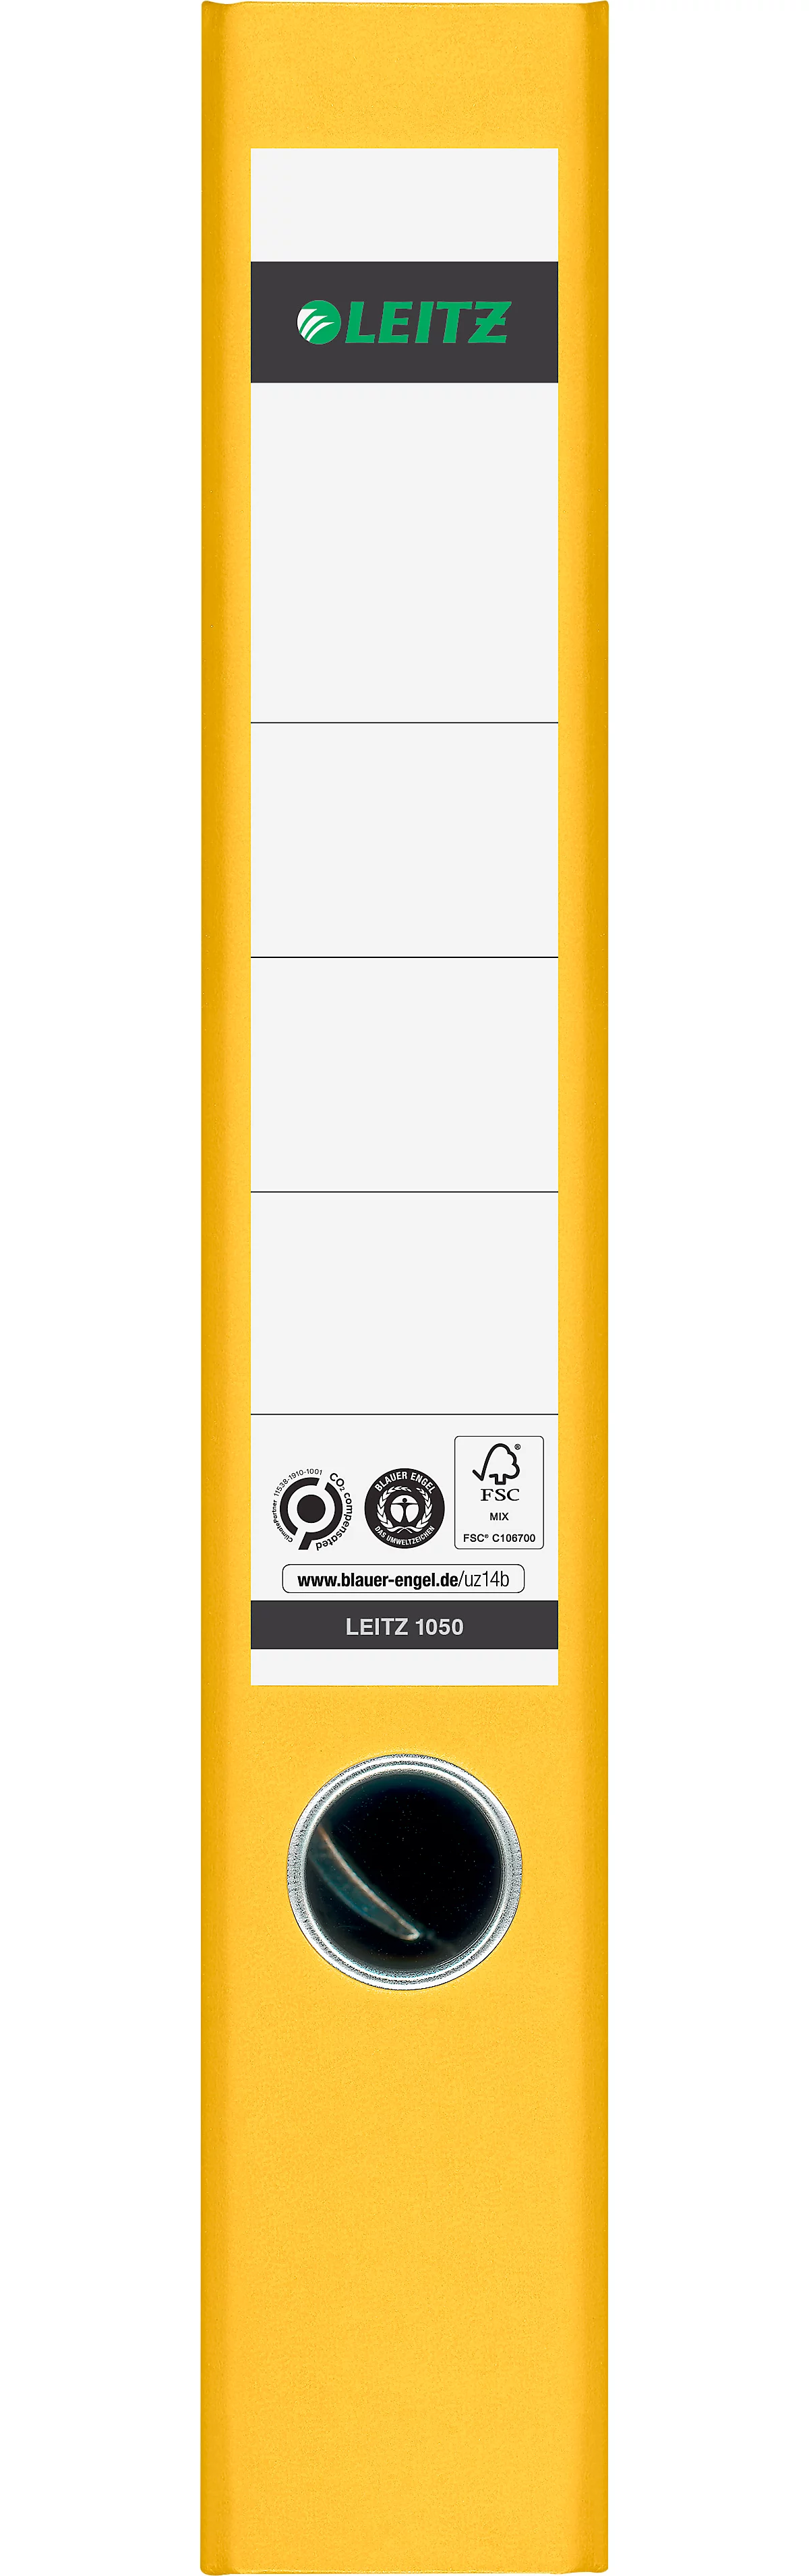 LEITZ® ordner 1050, A4, rugbreedte 52 mm, geel